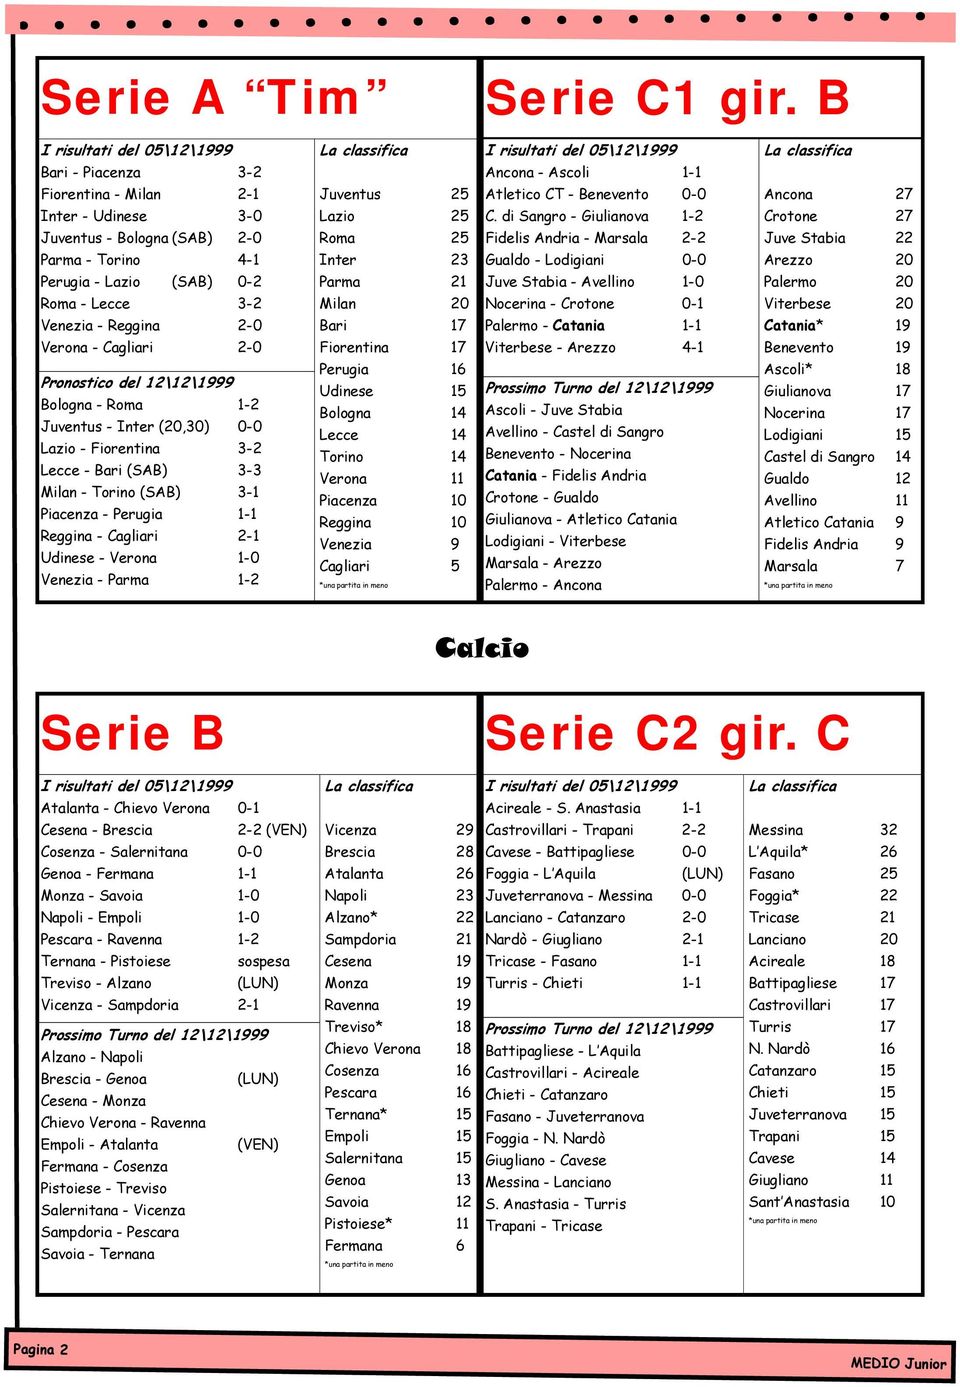 Pronostico del 12\12\1999 Bologna - Roma 1-2 Juventus - Inter (20,30) 0-0 Lazio - Fiorentina 3-2 Lecce - Bari (SAB) 3-3 Milan - Torino (SAB) 3-1 Piacenza - Perugia 1-1 Reggina - Cagliari 2-1 Udinese